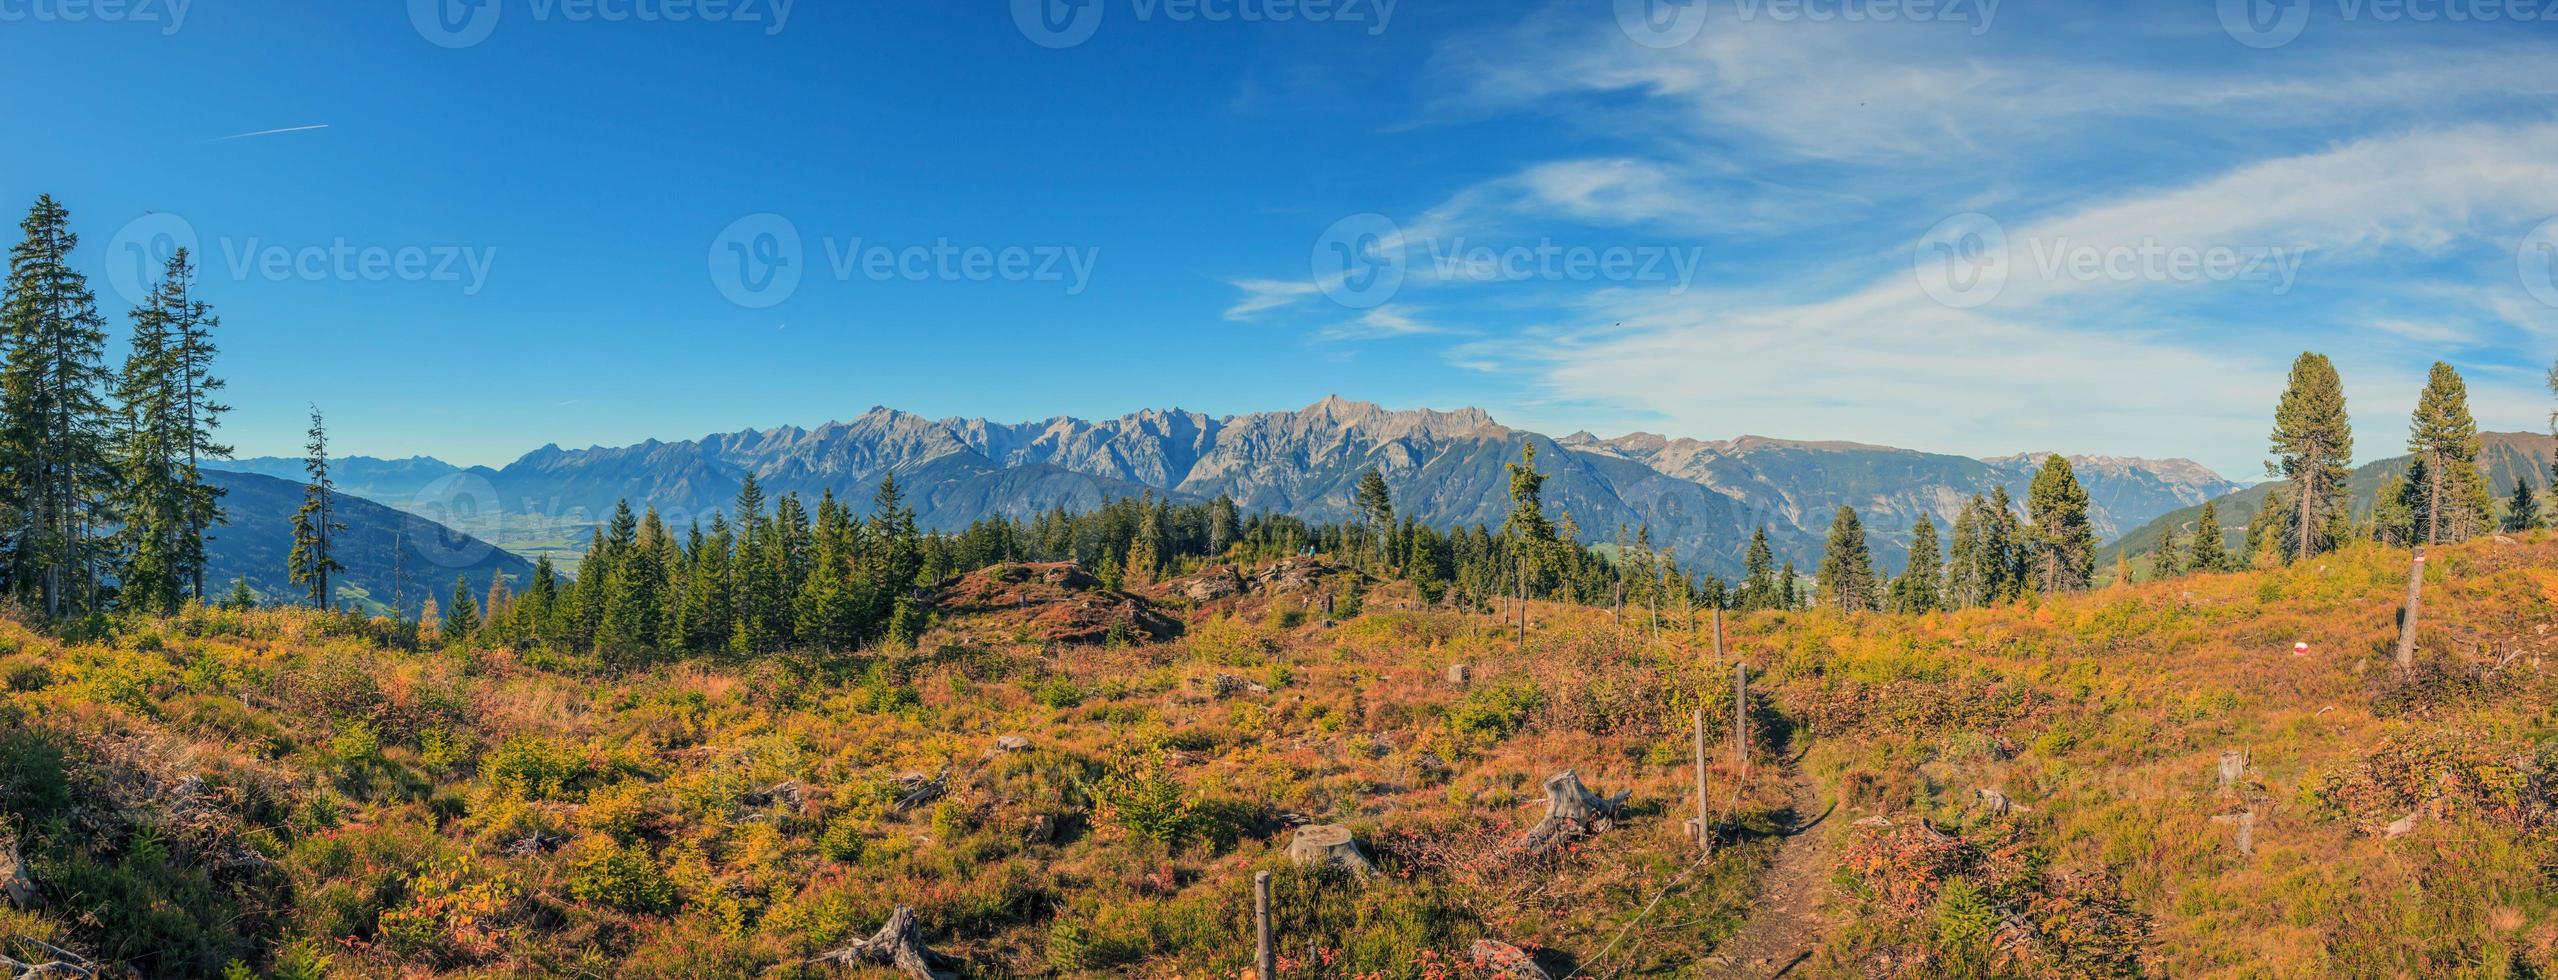 vue panoramique sur la chaîne de montagnes du karwendel sous un ciel bleu avec de légers nuages photo